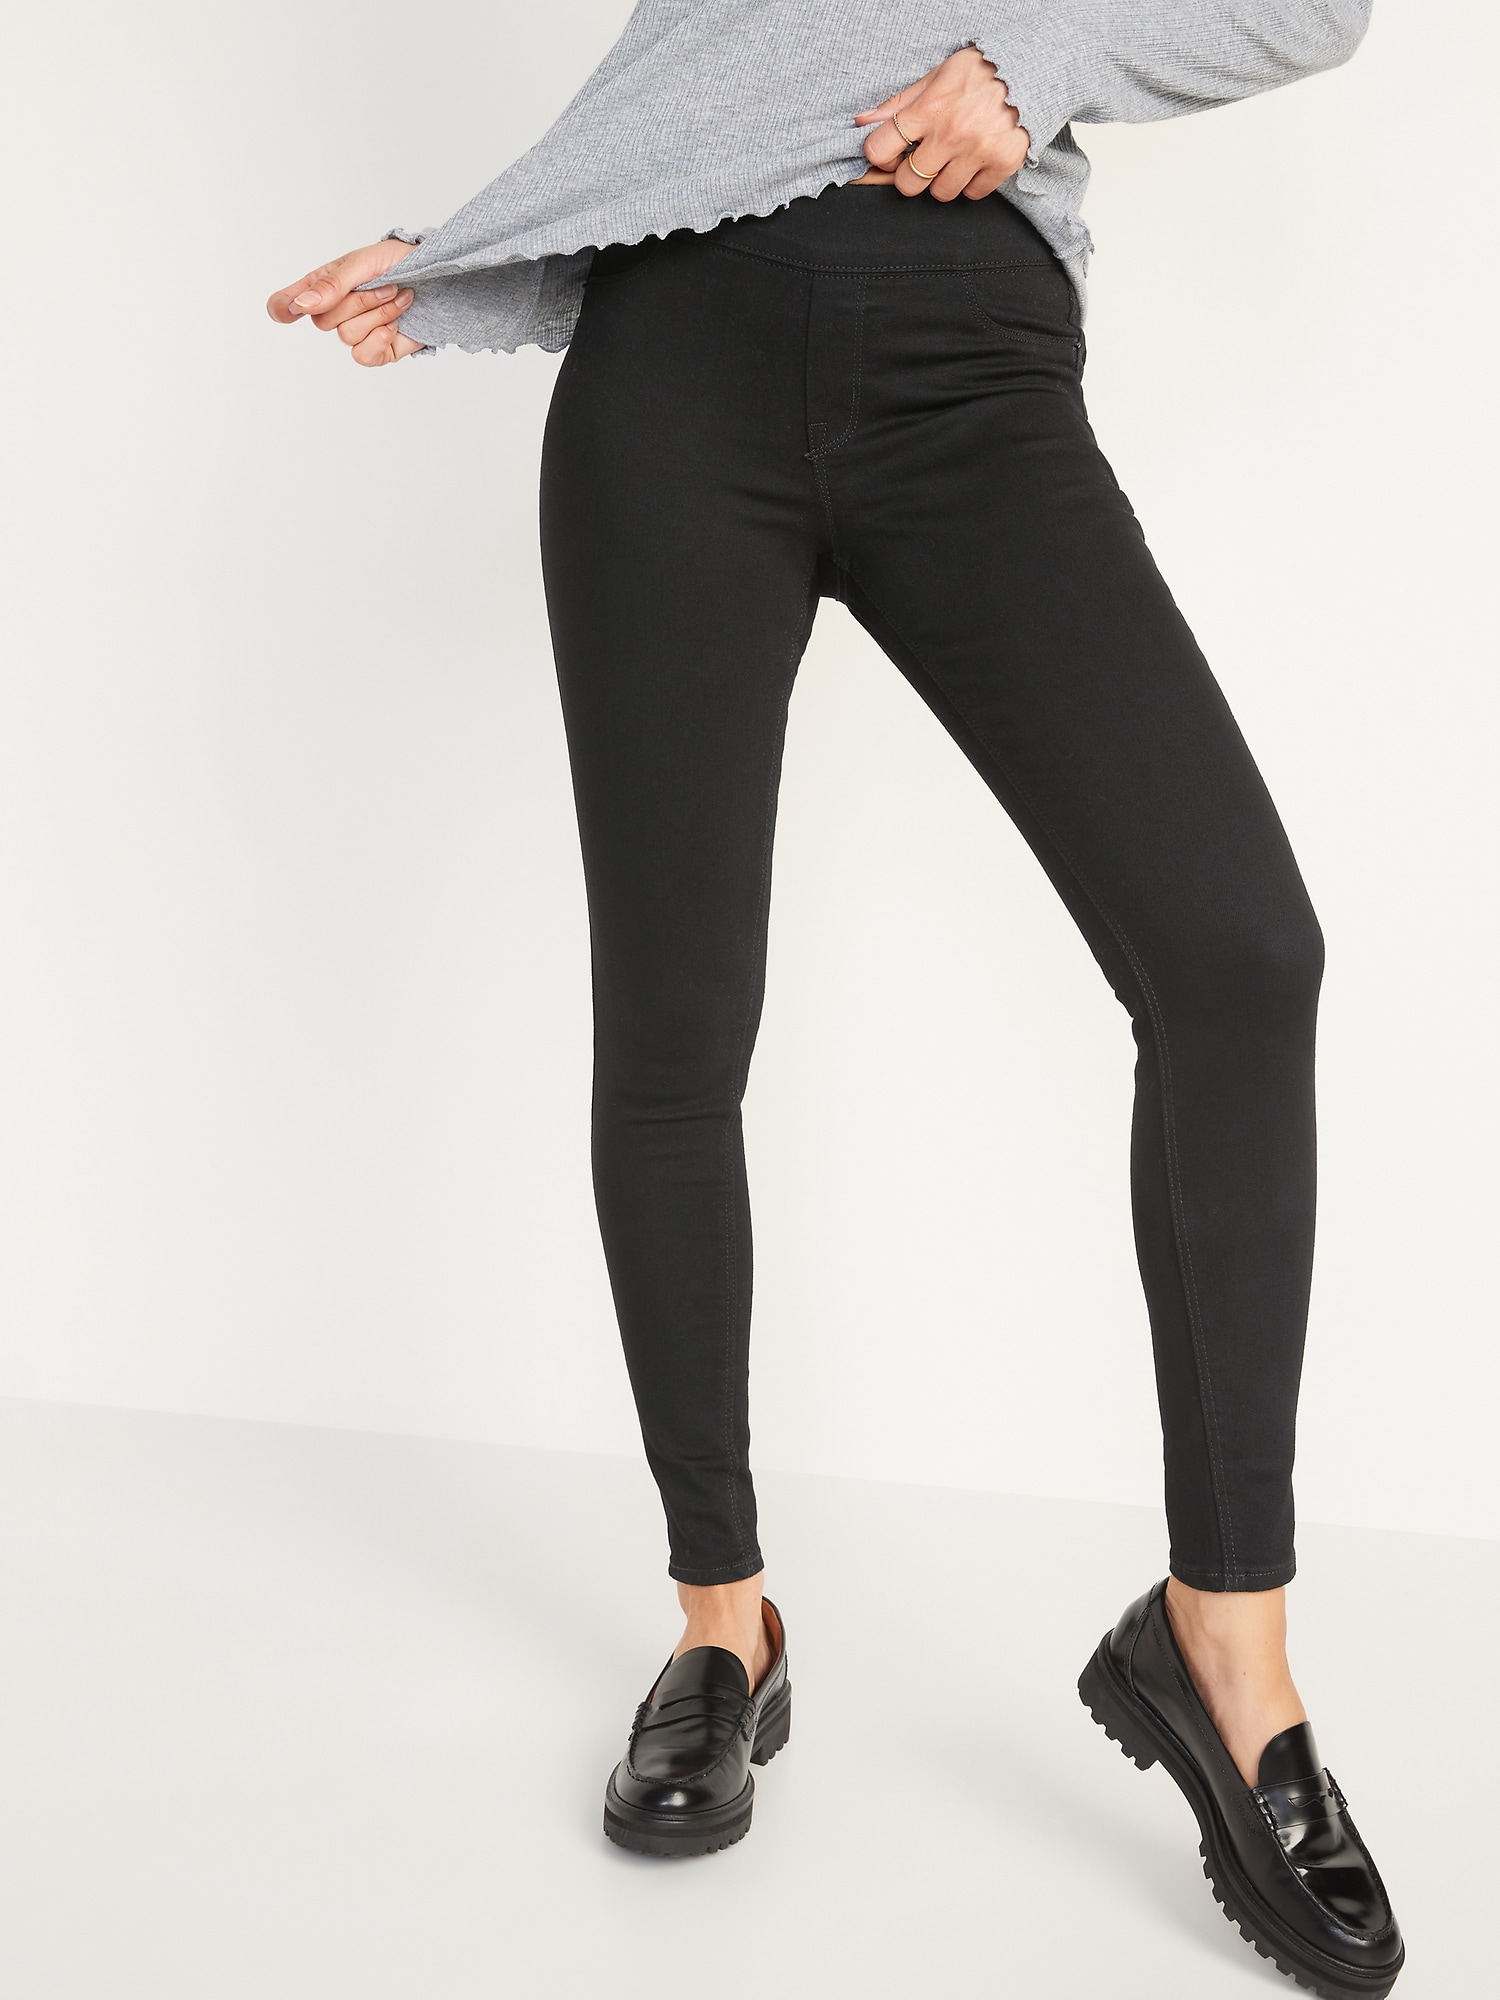 Buy Black Jeans & Jeggings for Women by Broadstar Online